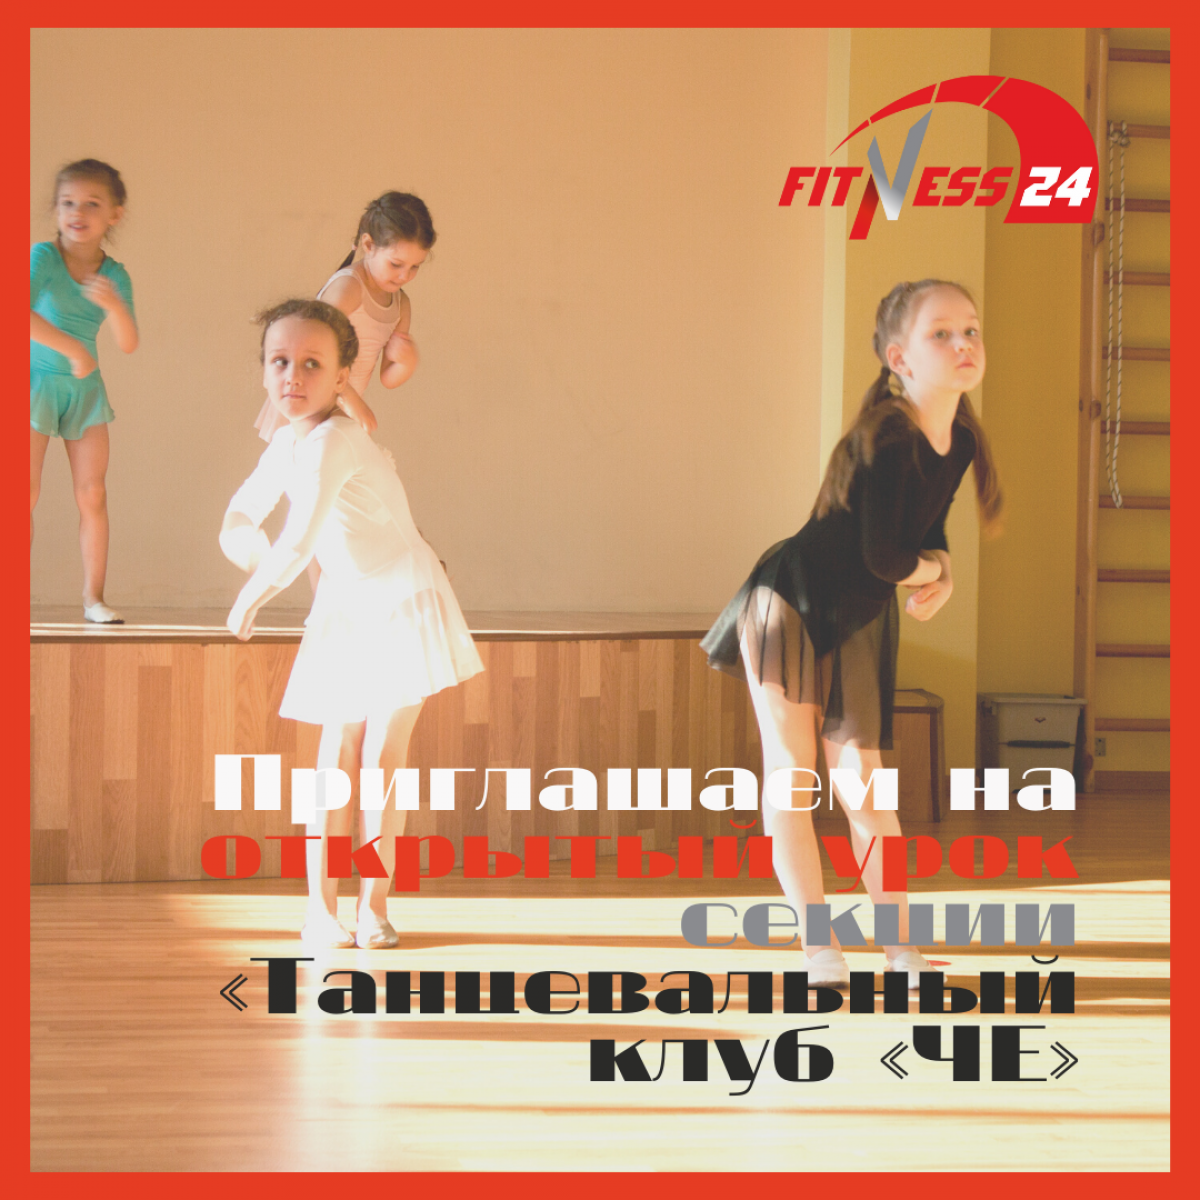 Приглашаем на открытый урок секции «Танцевальный клуб «ЧЕ» Fitness24 на Народной.